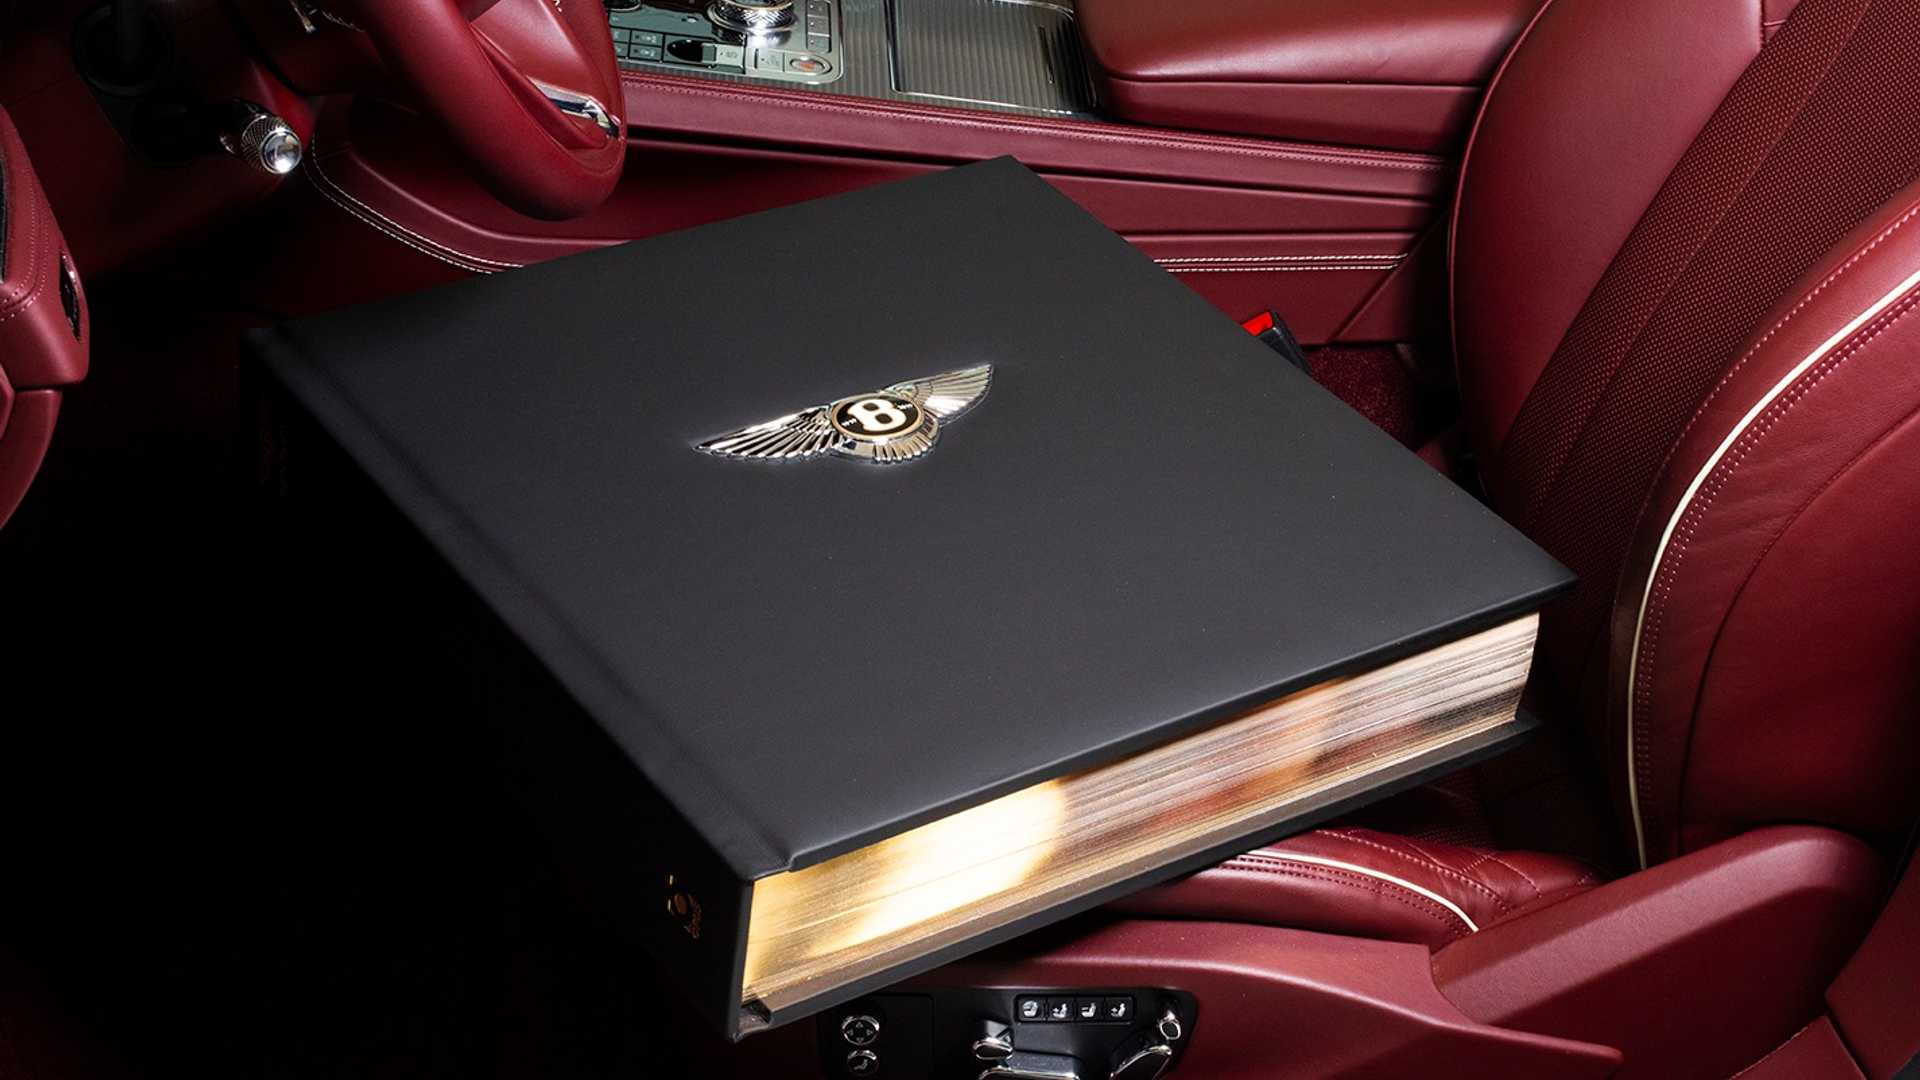 "The Bentley Centenary Opus"